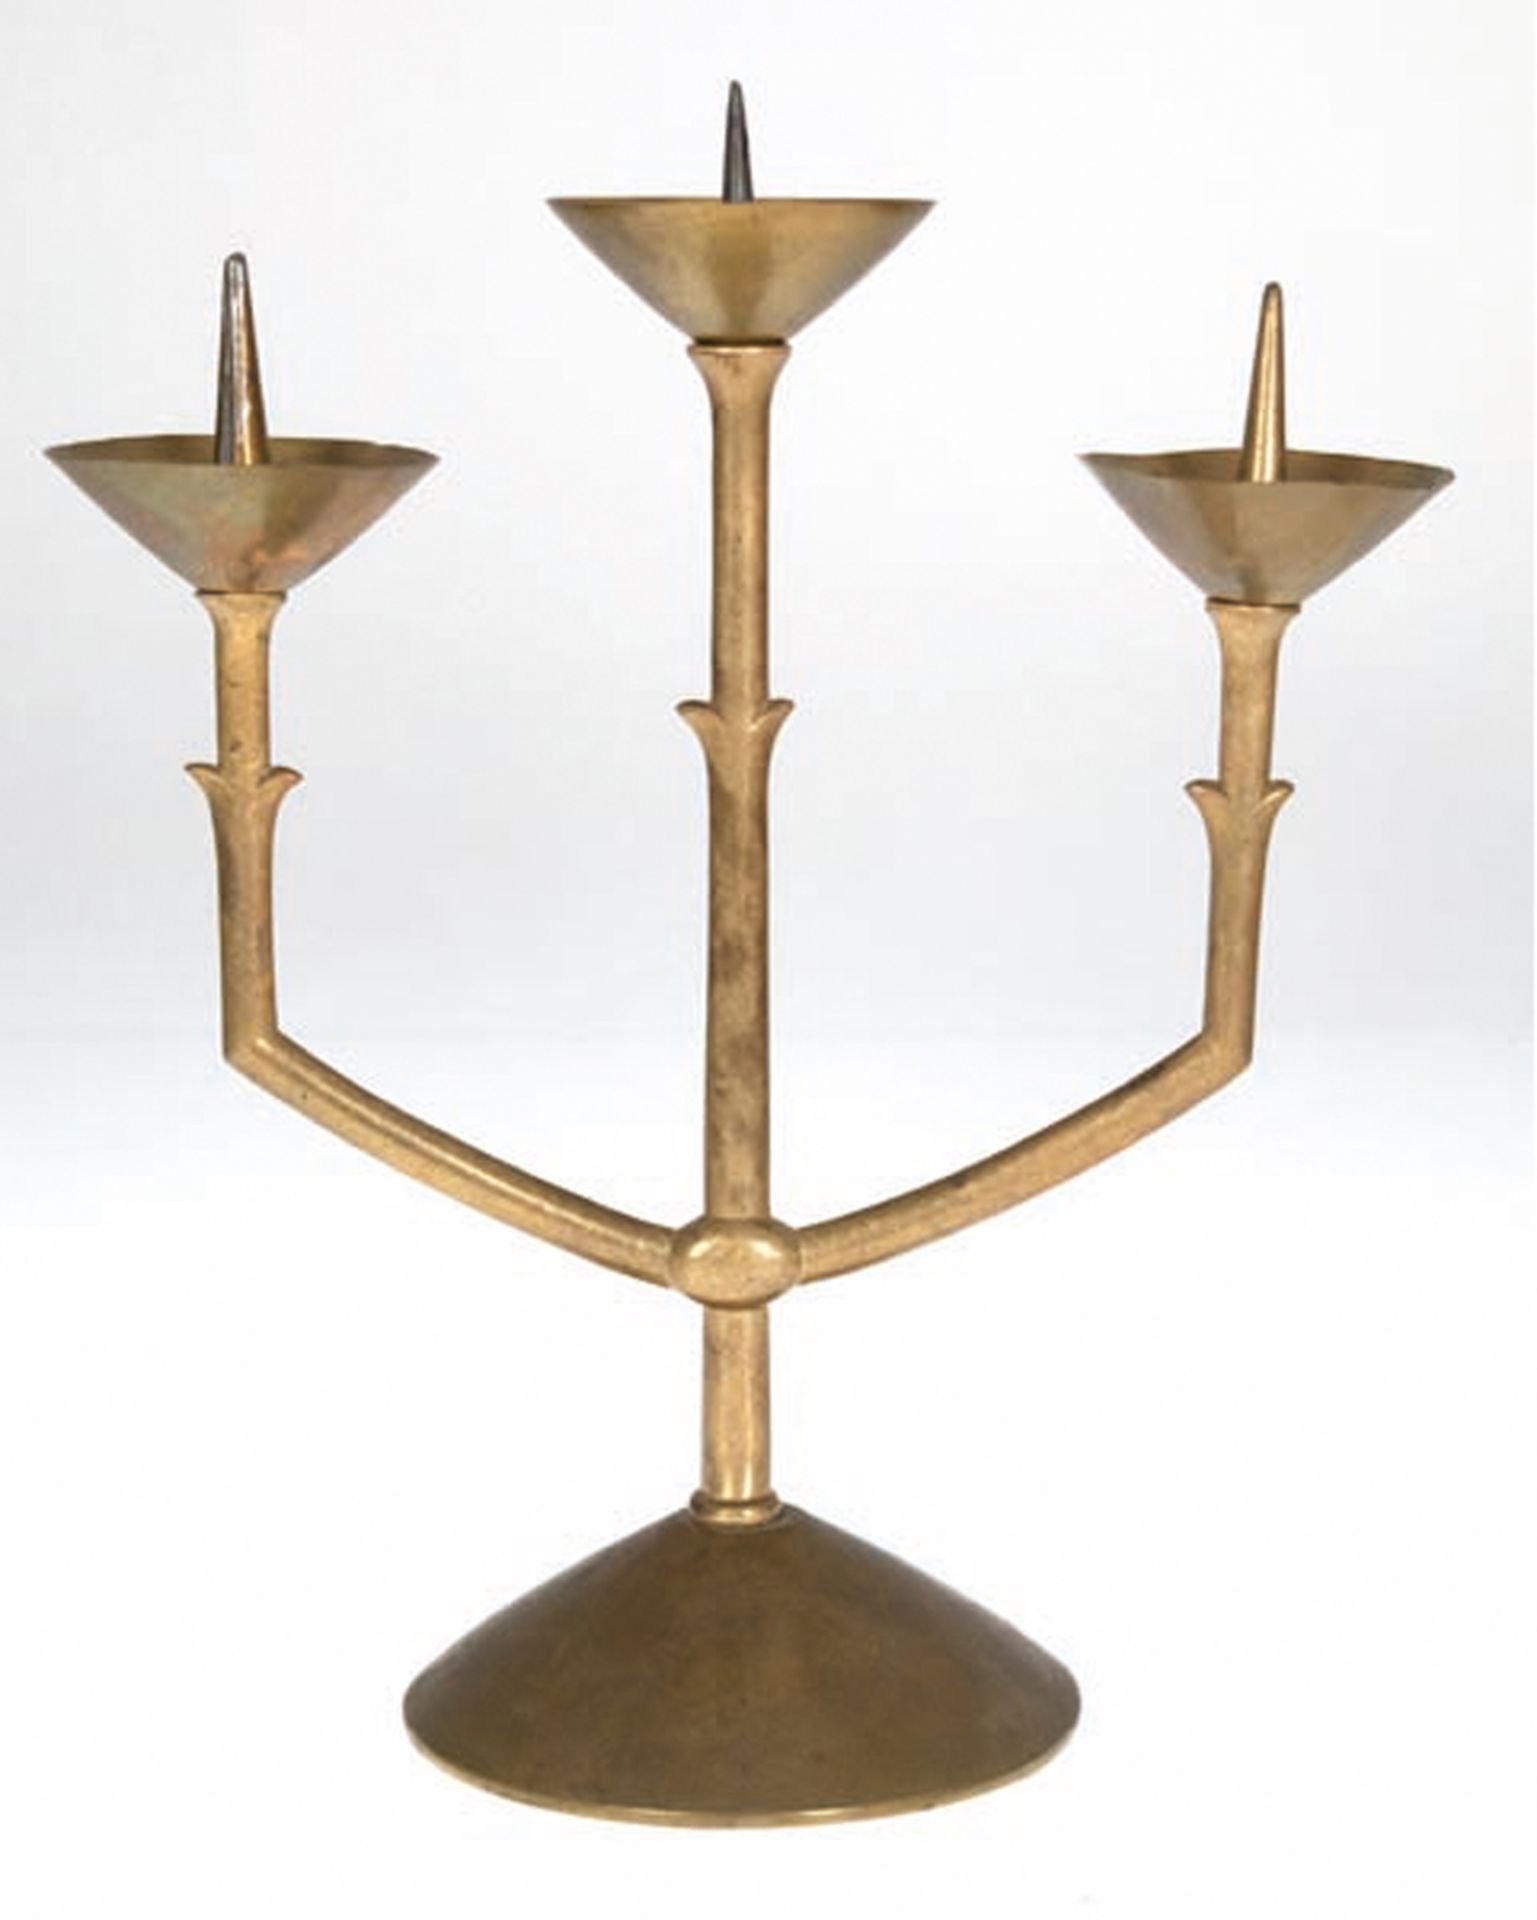 Art-Deco-Leuchter, Messing, 3-flammig, runder gefüllter Fuß, 3 Leuchterarme mit trichterförmigen Tr